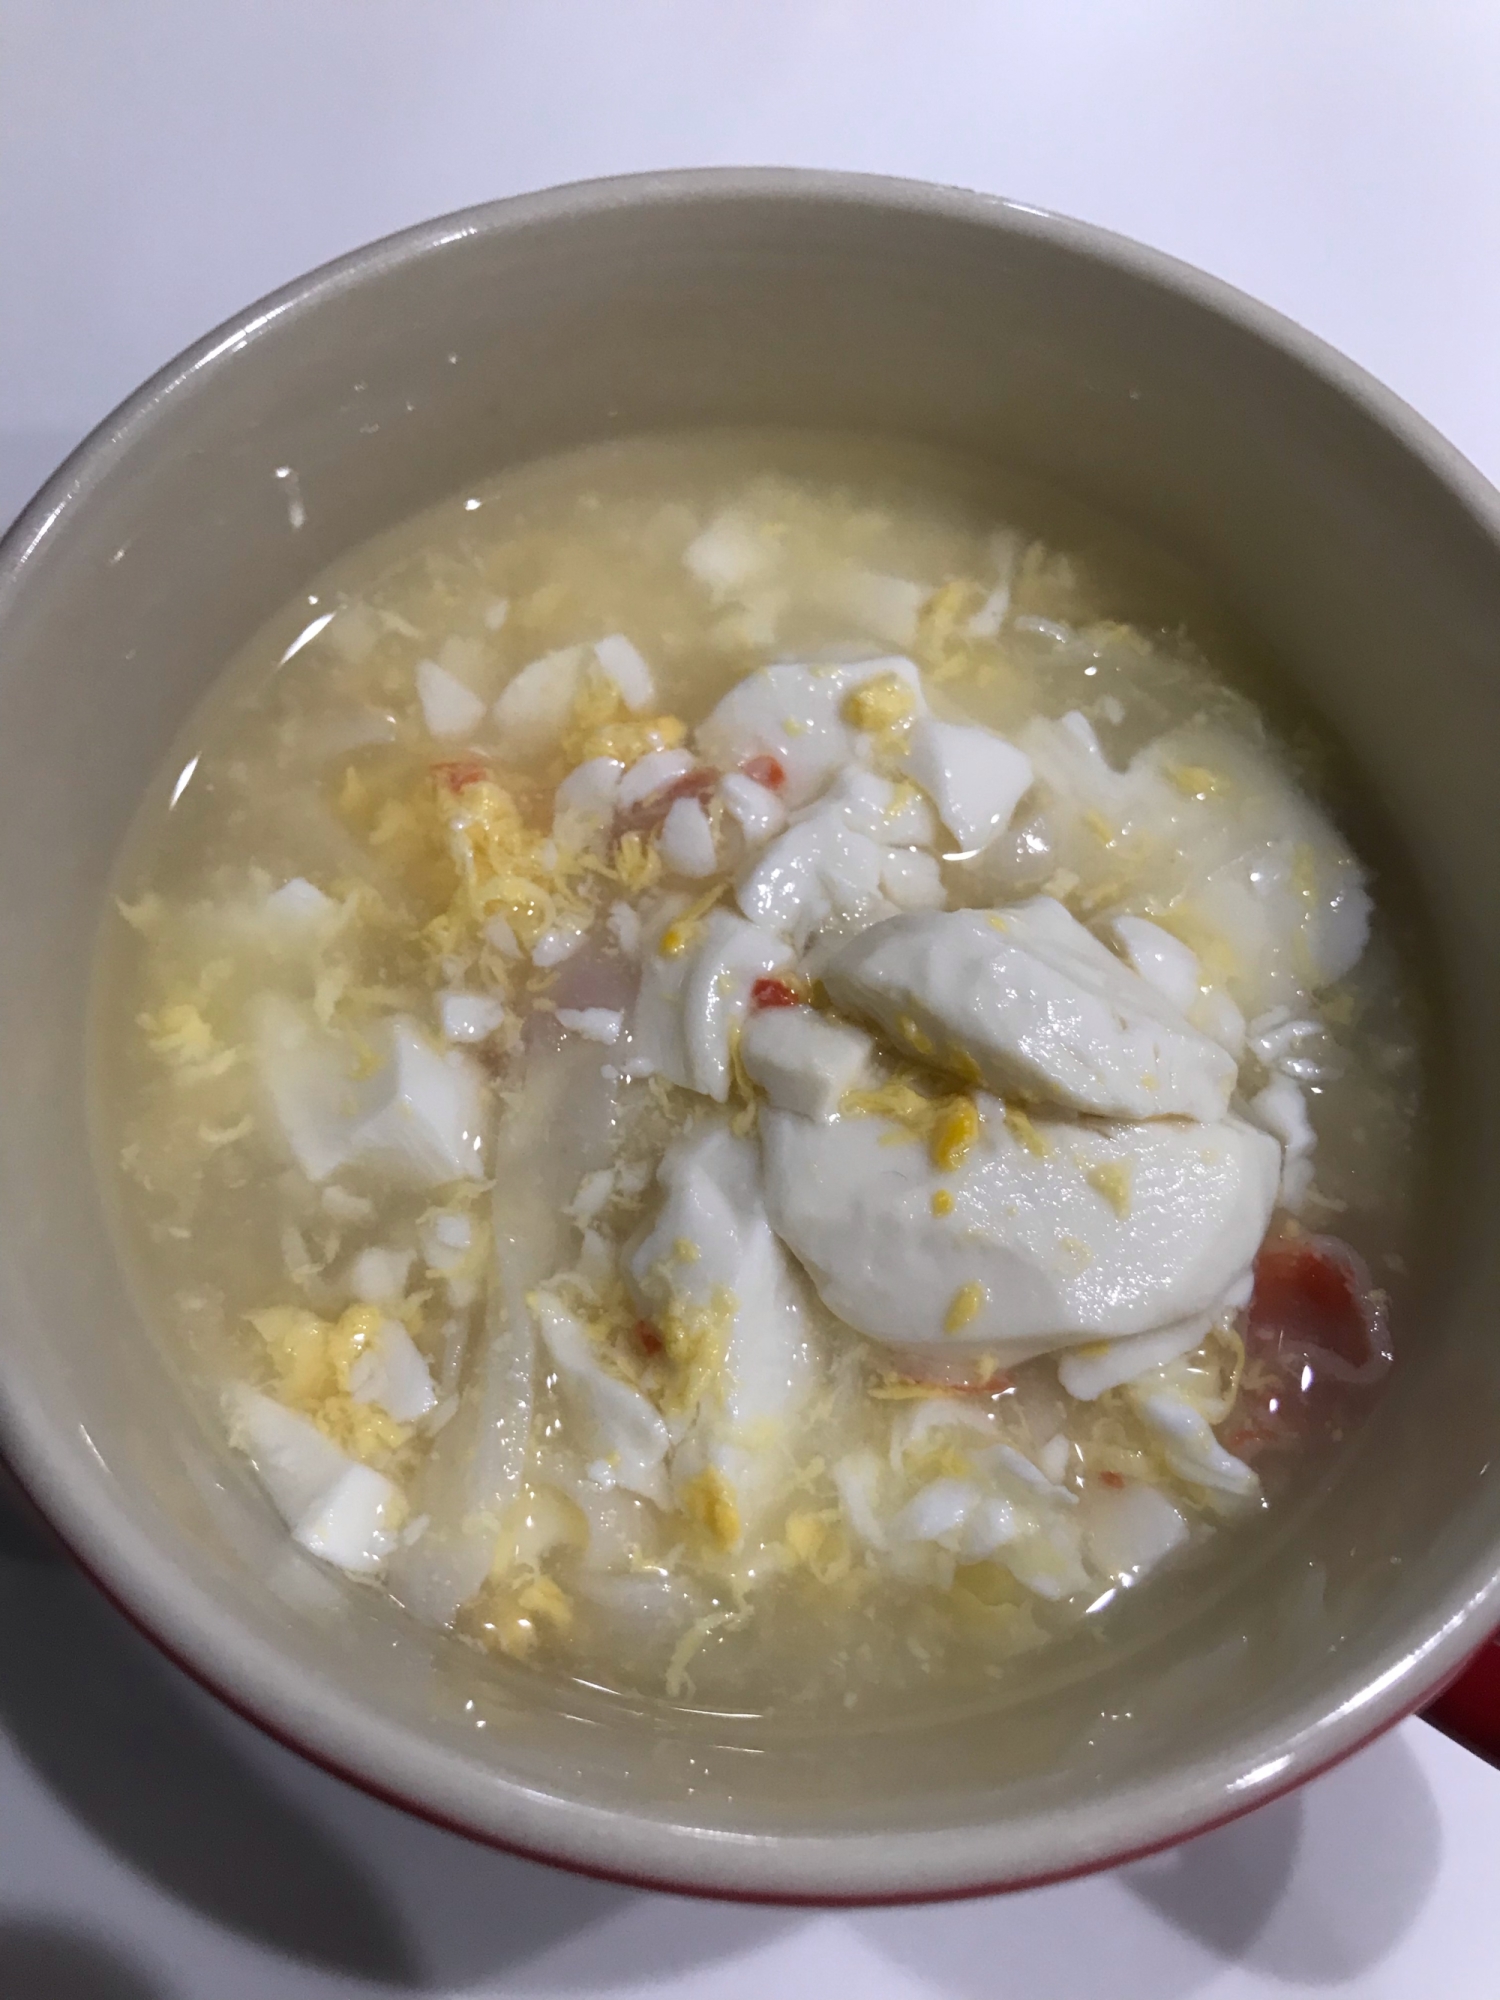 カニ玉スープ